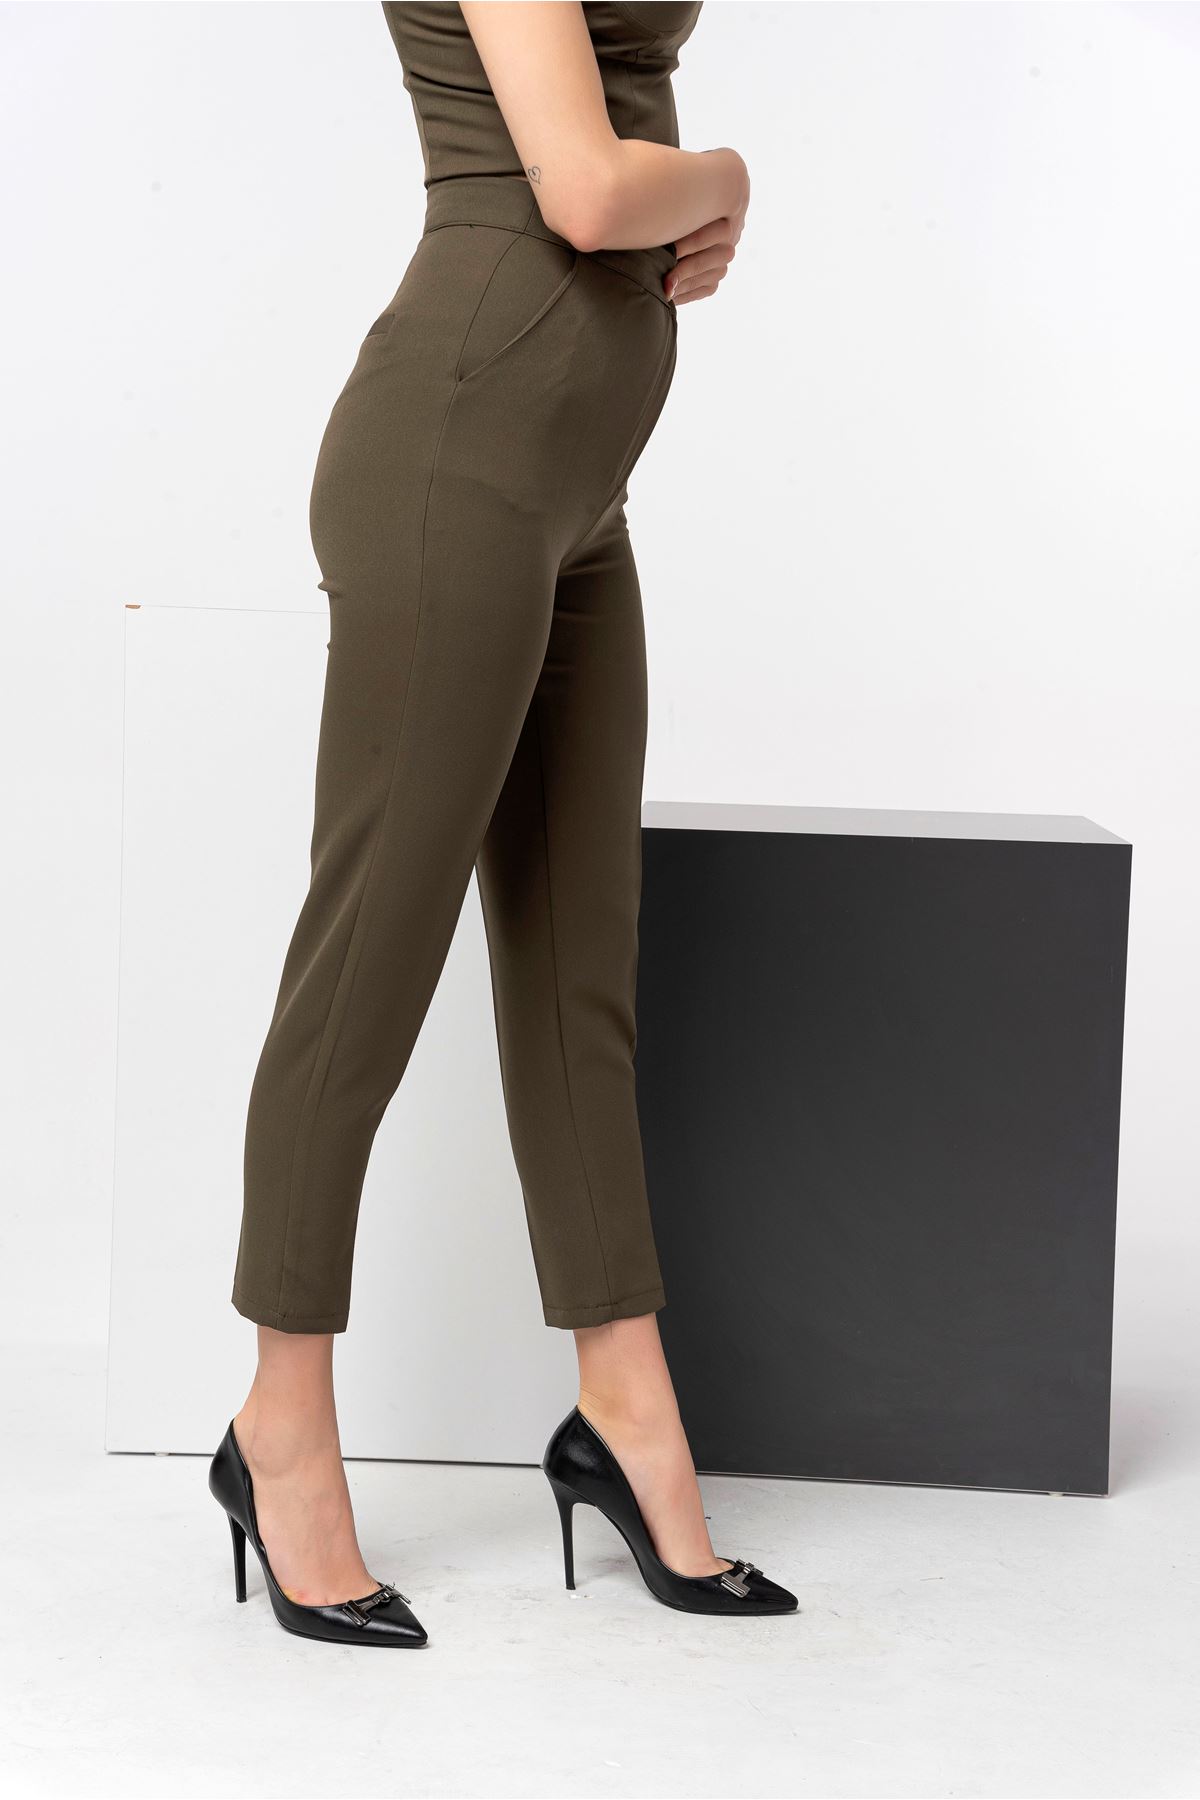 Atlas Kumaş Klasik Kadın Pantolon-Haki